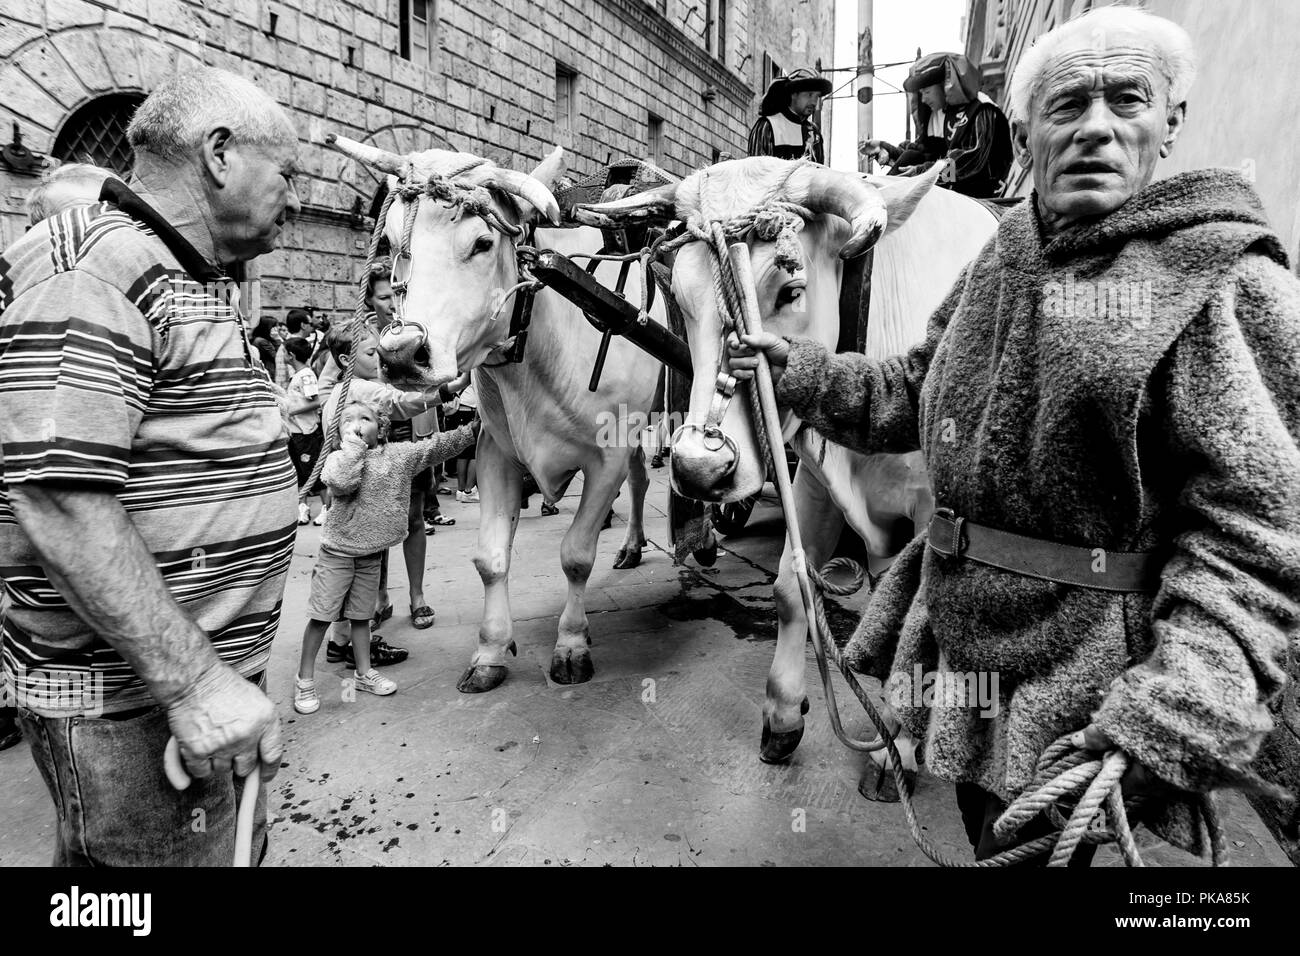 L 'traditionnels' sont des boeufs blancs ont défilé dans les rues de Sienne, le Palio di Siena, Sienne, Italie Banque D'Images